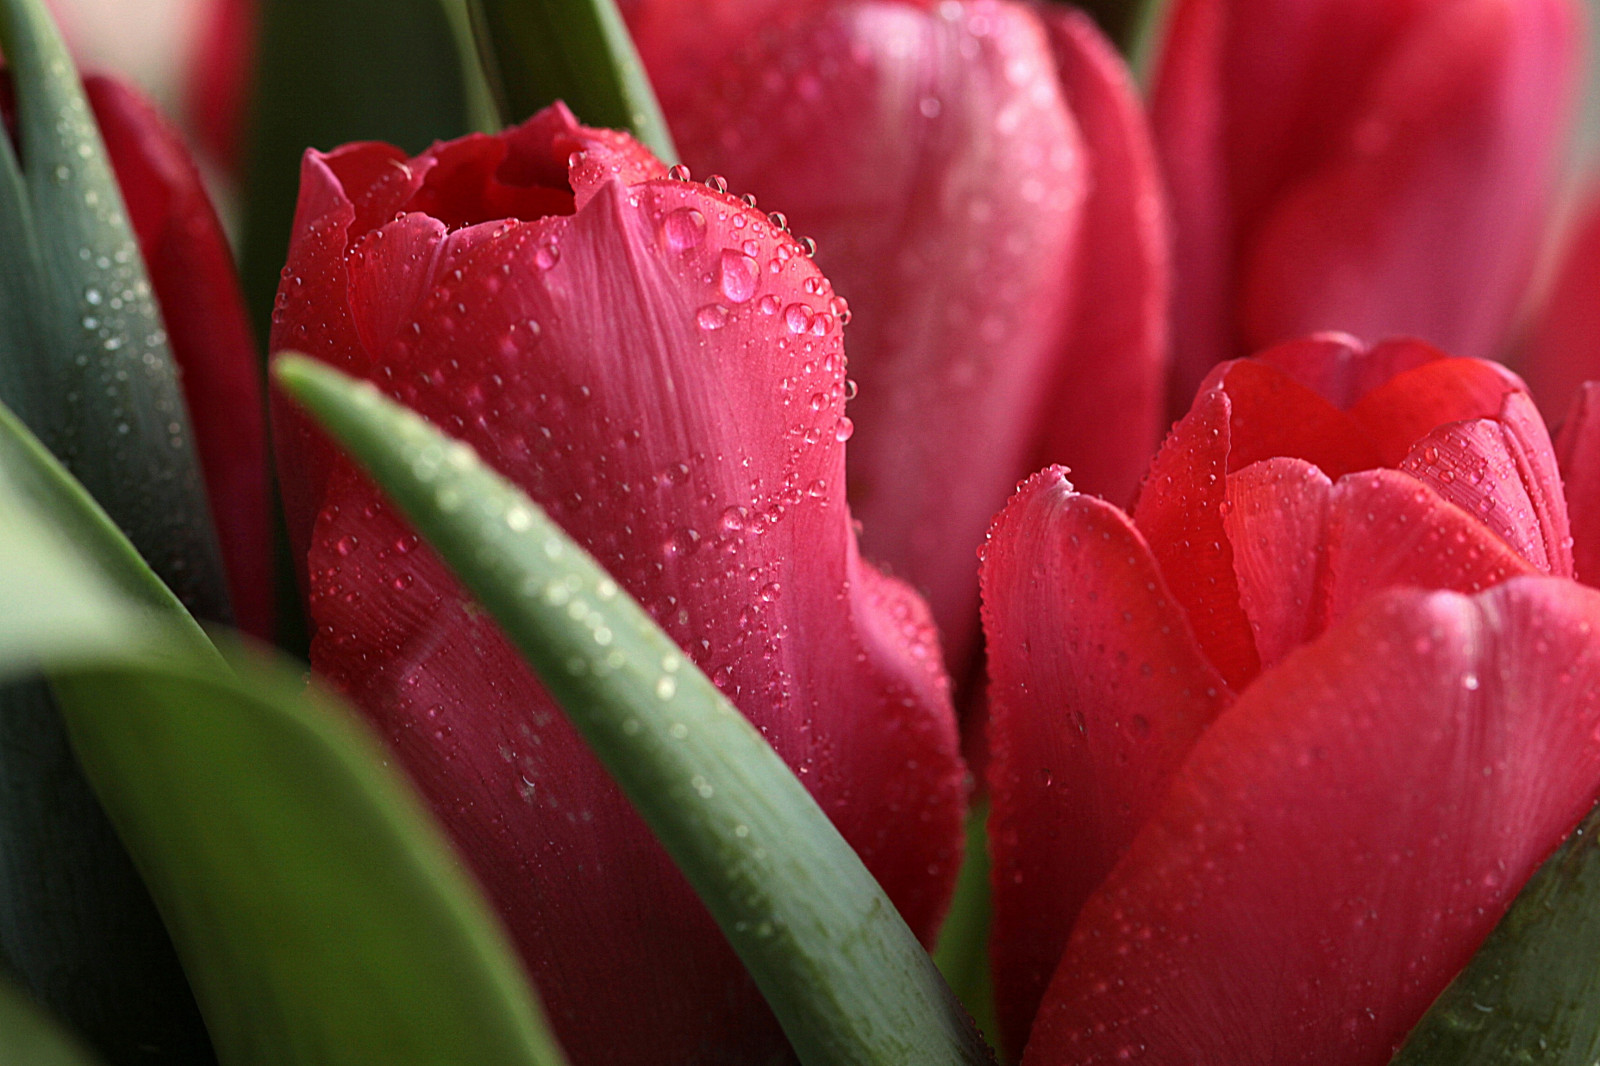 Hình nền hoa tulip đơn giản